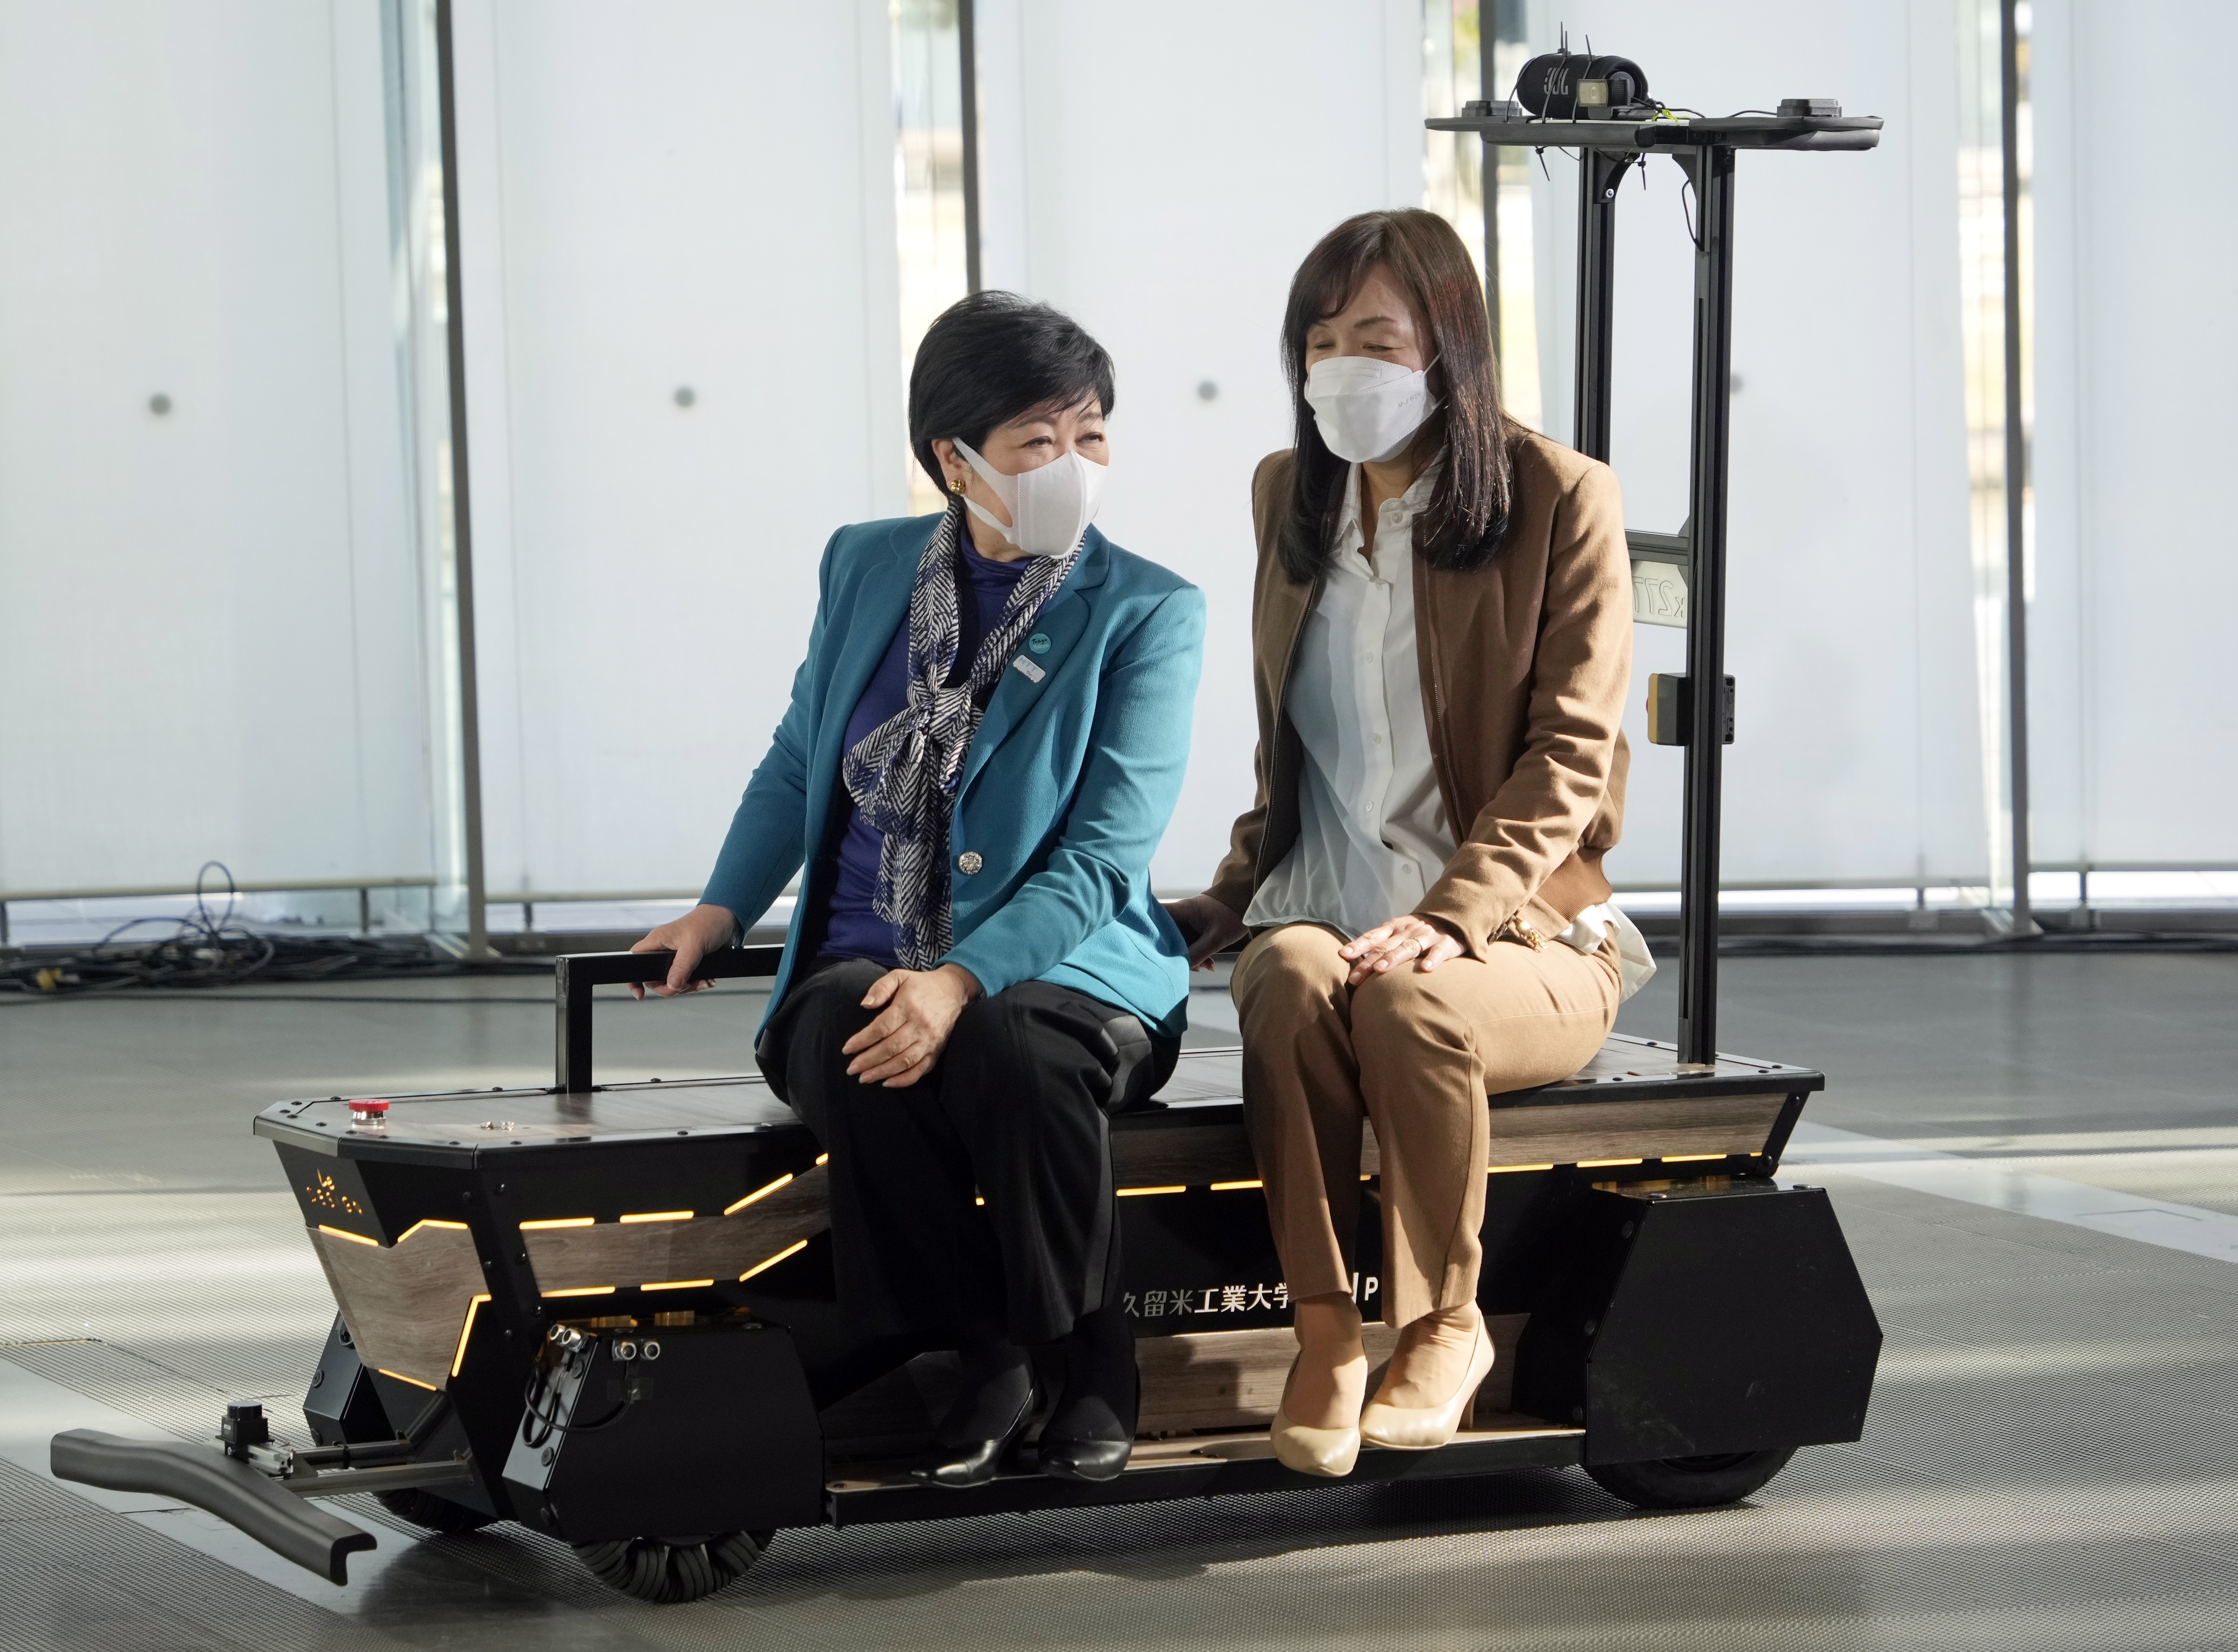 El Partner Mobility One es un dispositivo destinado a ayudar a las personas con movilidad reducida. (Foto: EFE/EPA/FRANCK ROBICHON)
